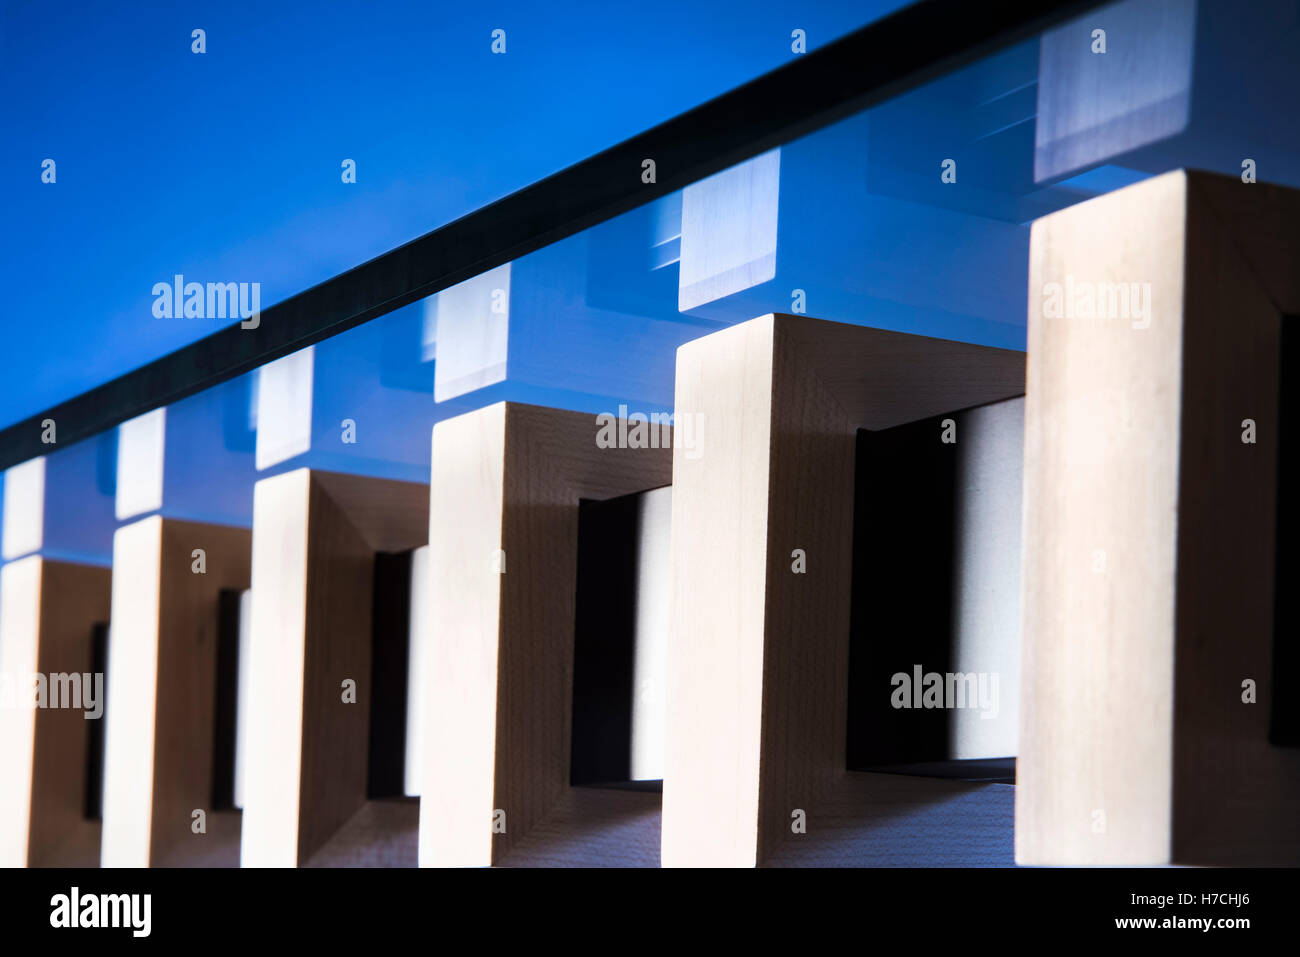 Moderner Couchtisch Office Furniture Design auf blauem Grund. Stockfoto